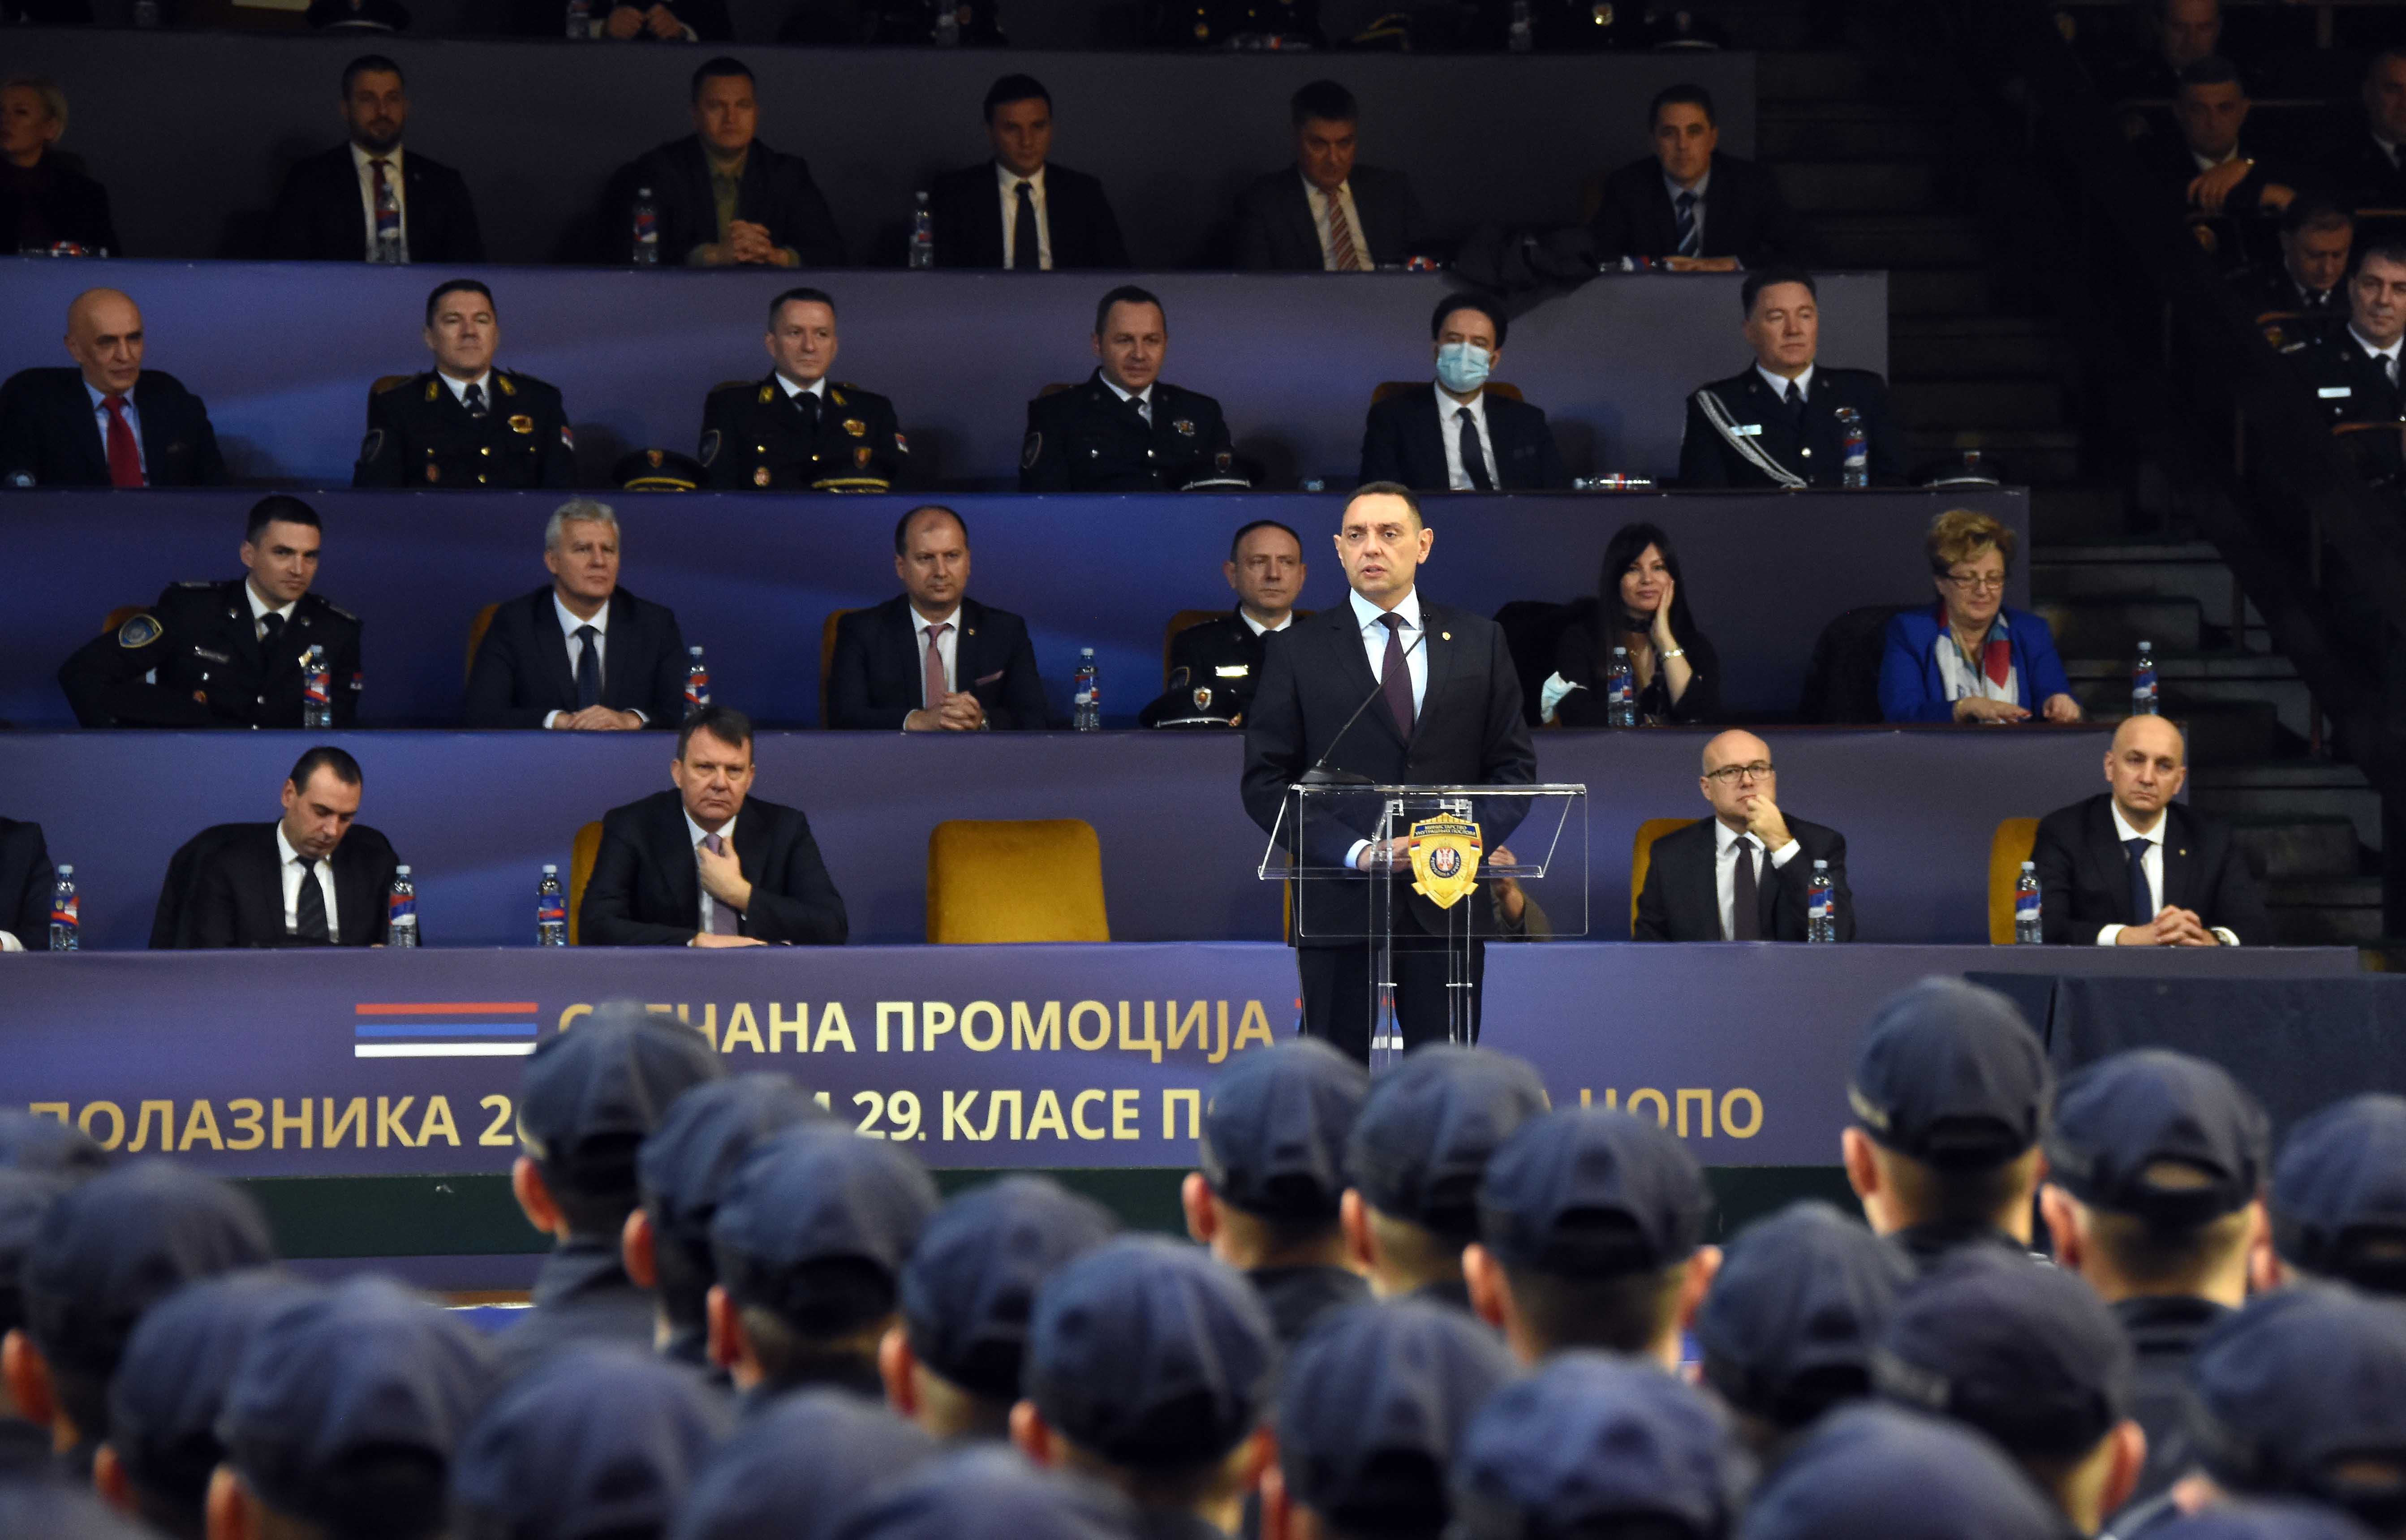 Министар Вулин на свечаности поводом пријема у радни однос 1.024 нова полицијска службеника